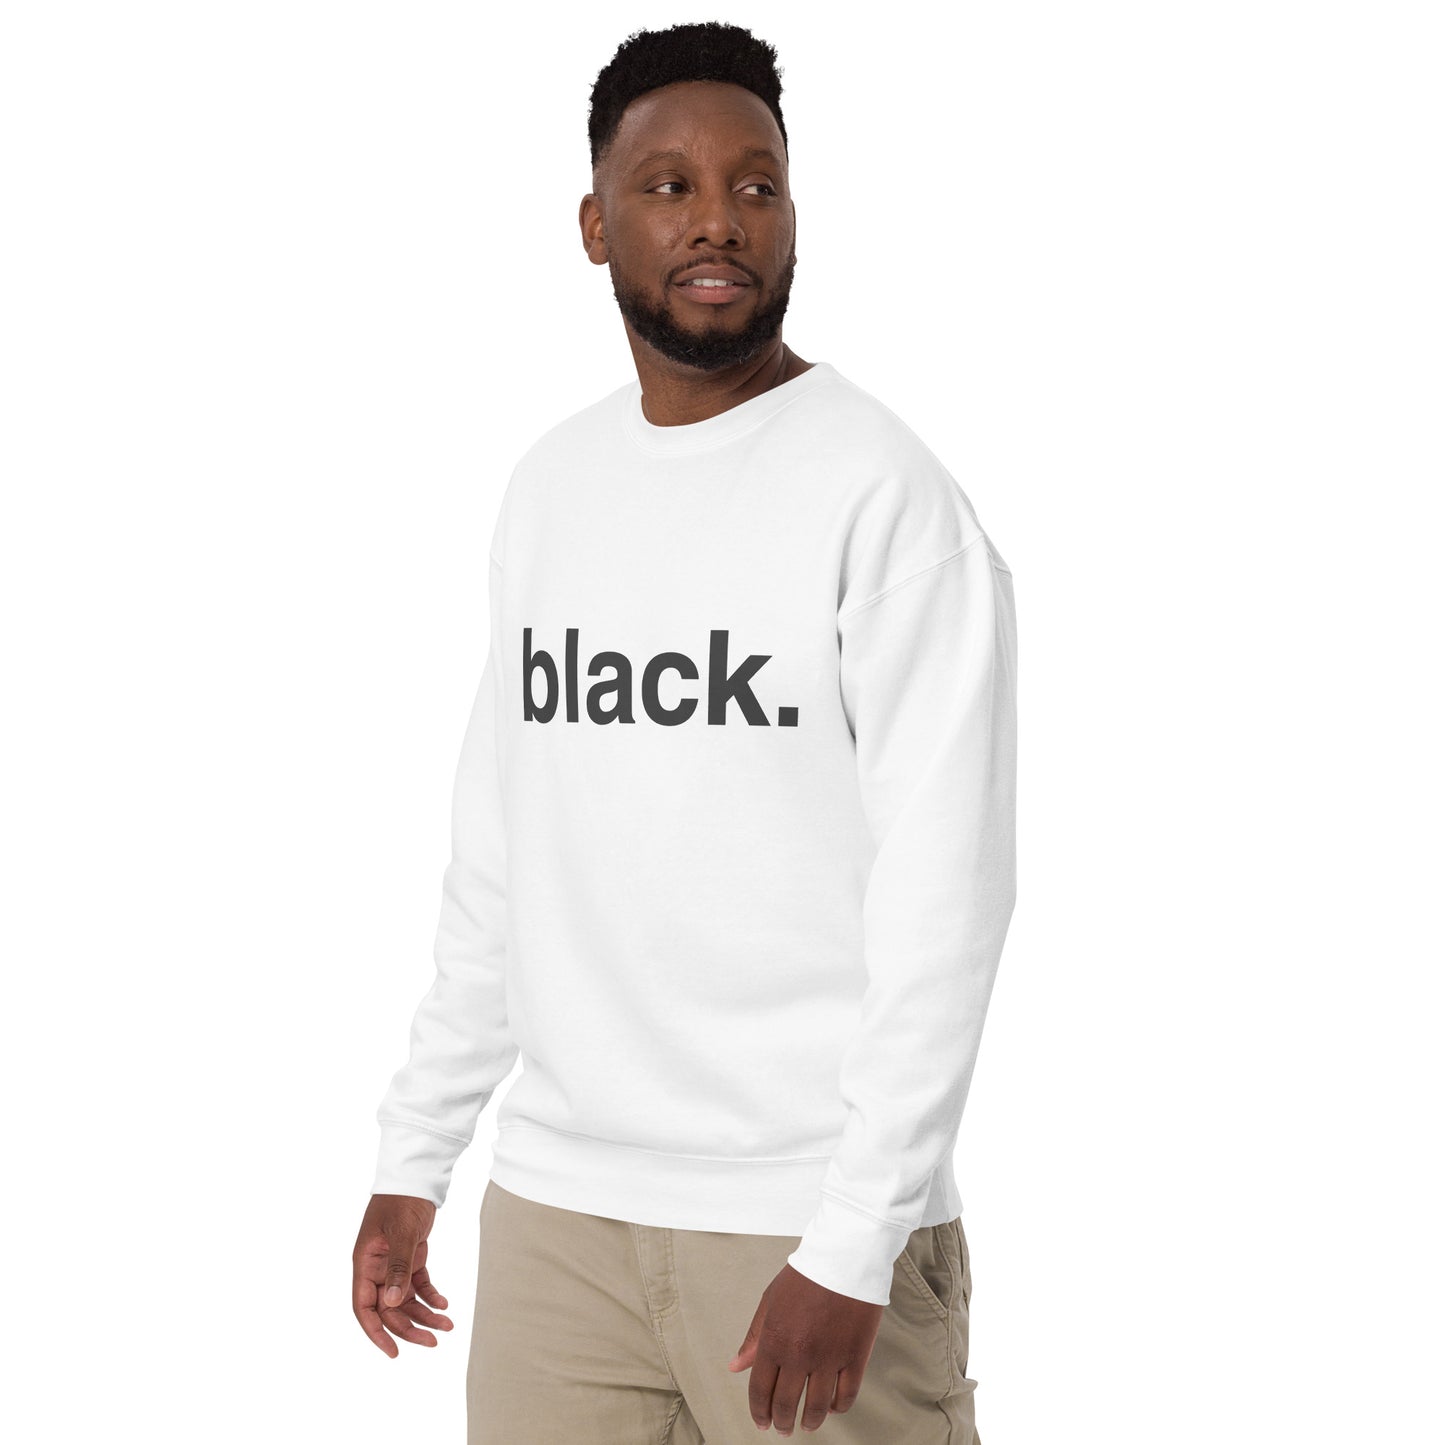 black... Unisex Premium Sweatshirt